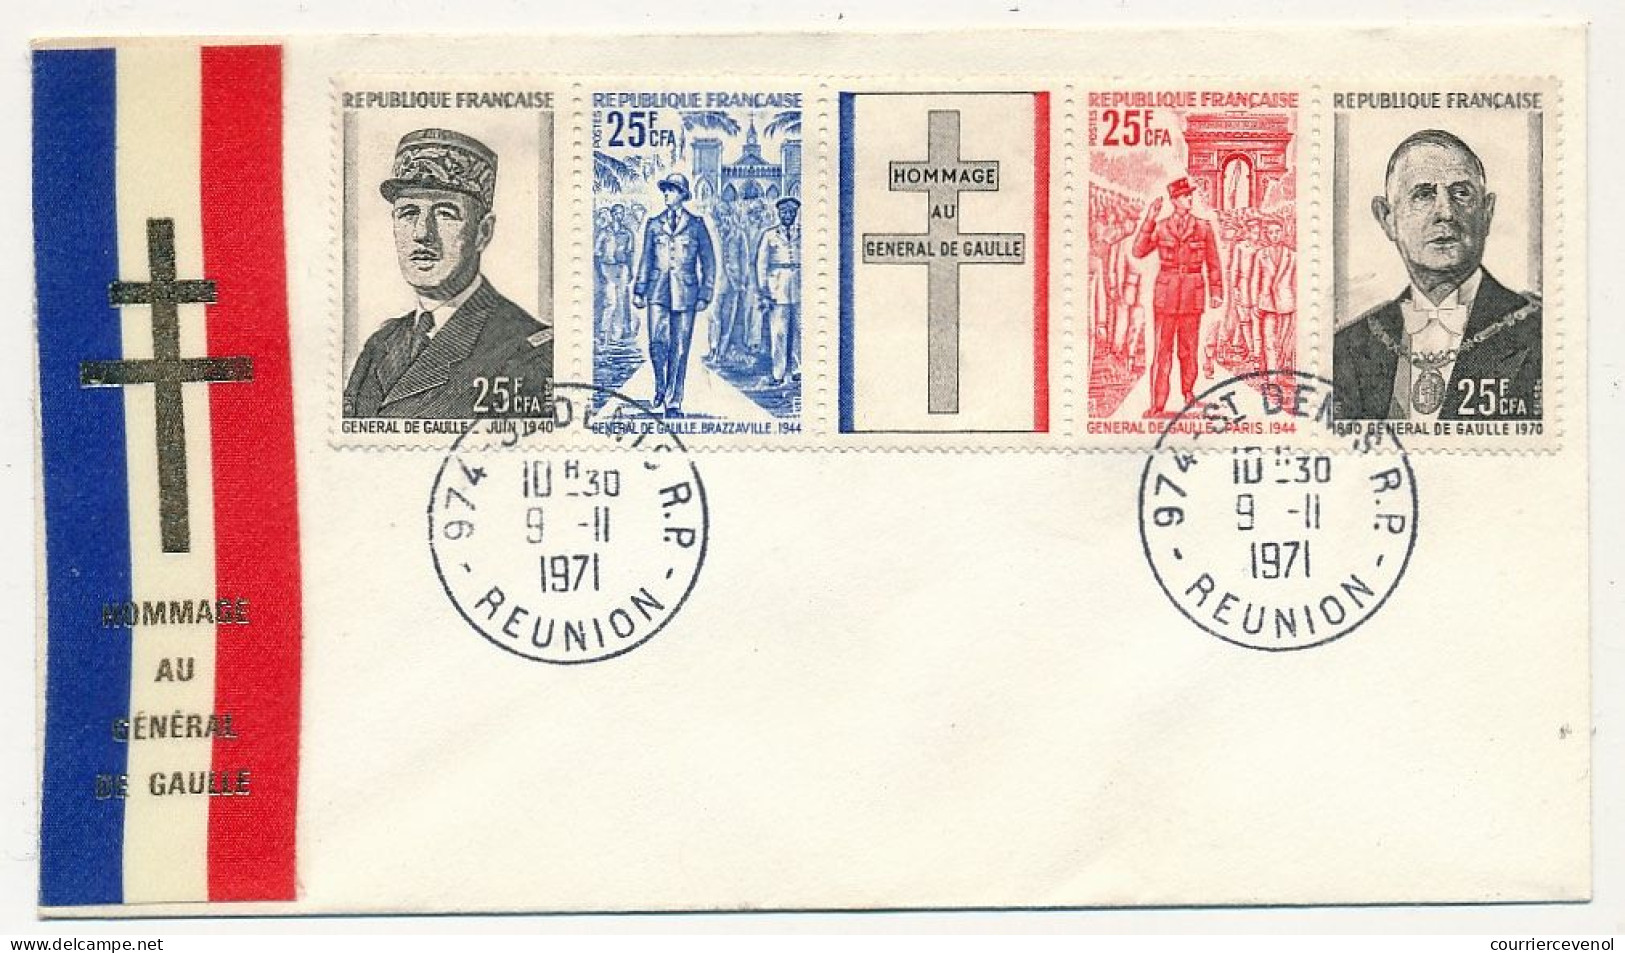 REUNION - Enveloppe FDC Bande De Gaulle, Premier Jour 9/11/1971 - St Denis R.P. Réunion - Covers & Documents